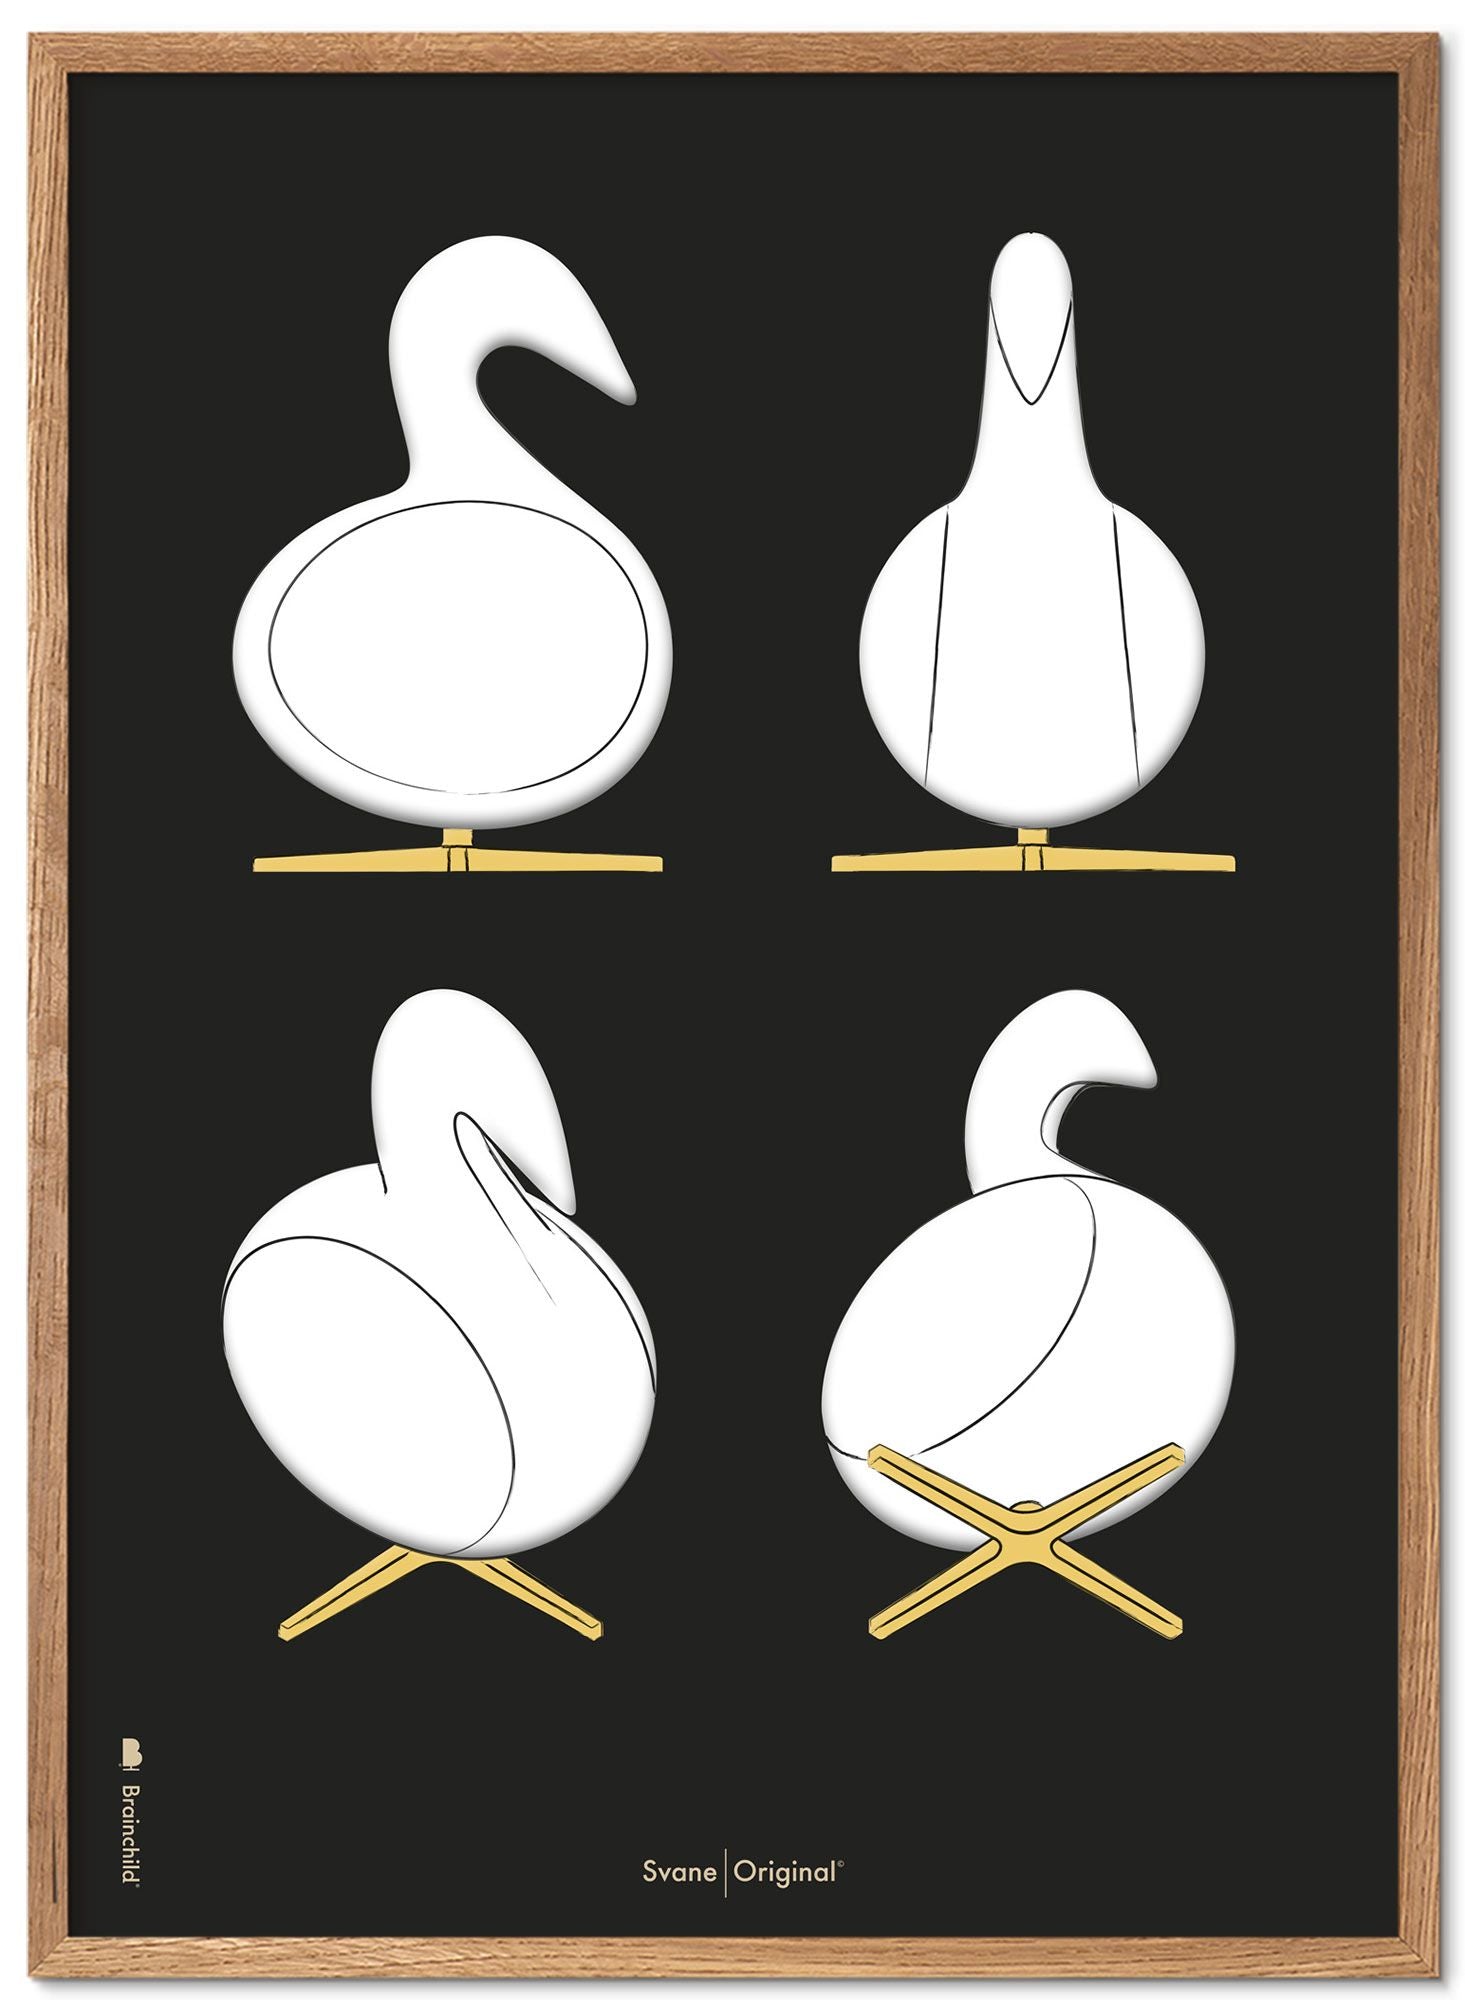 Brainchild Swan Design Sketches Poster Frame lavet af let træ 30x40 cm, sort baggrund